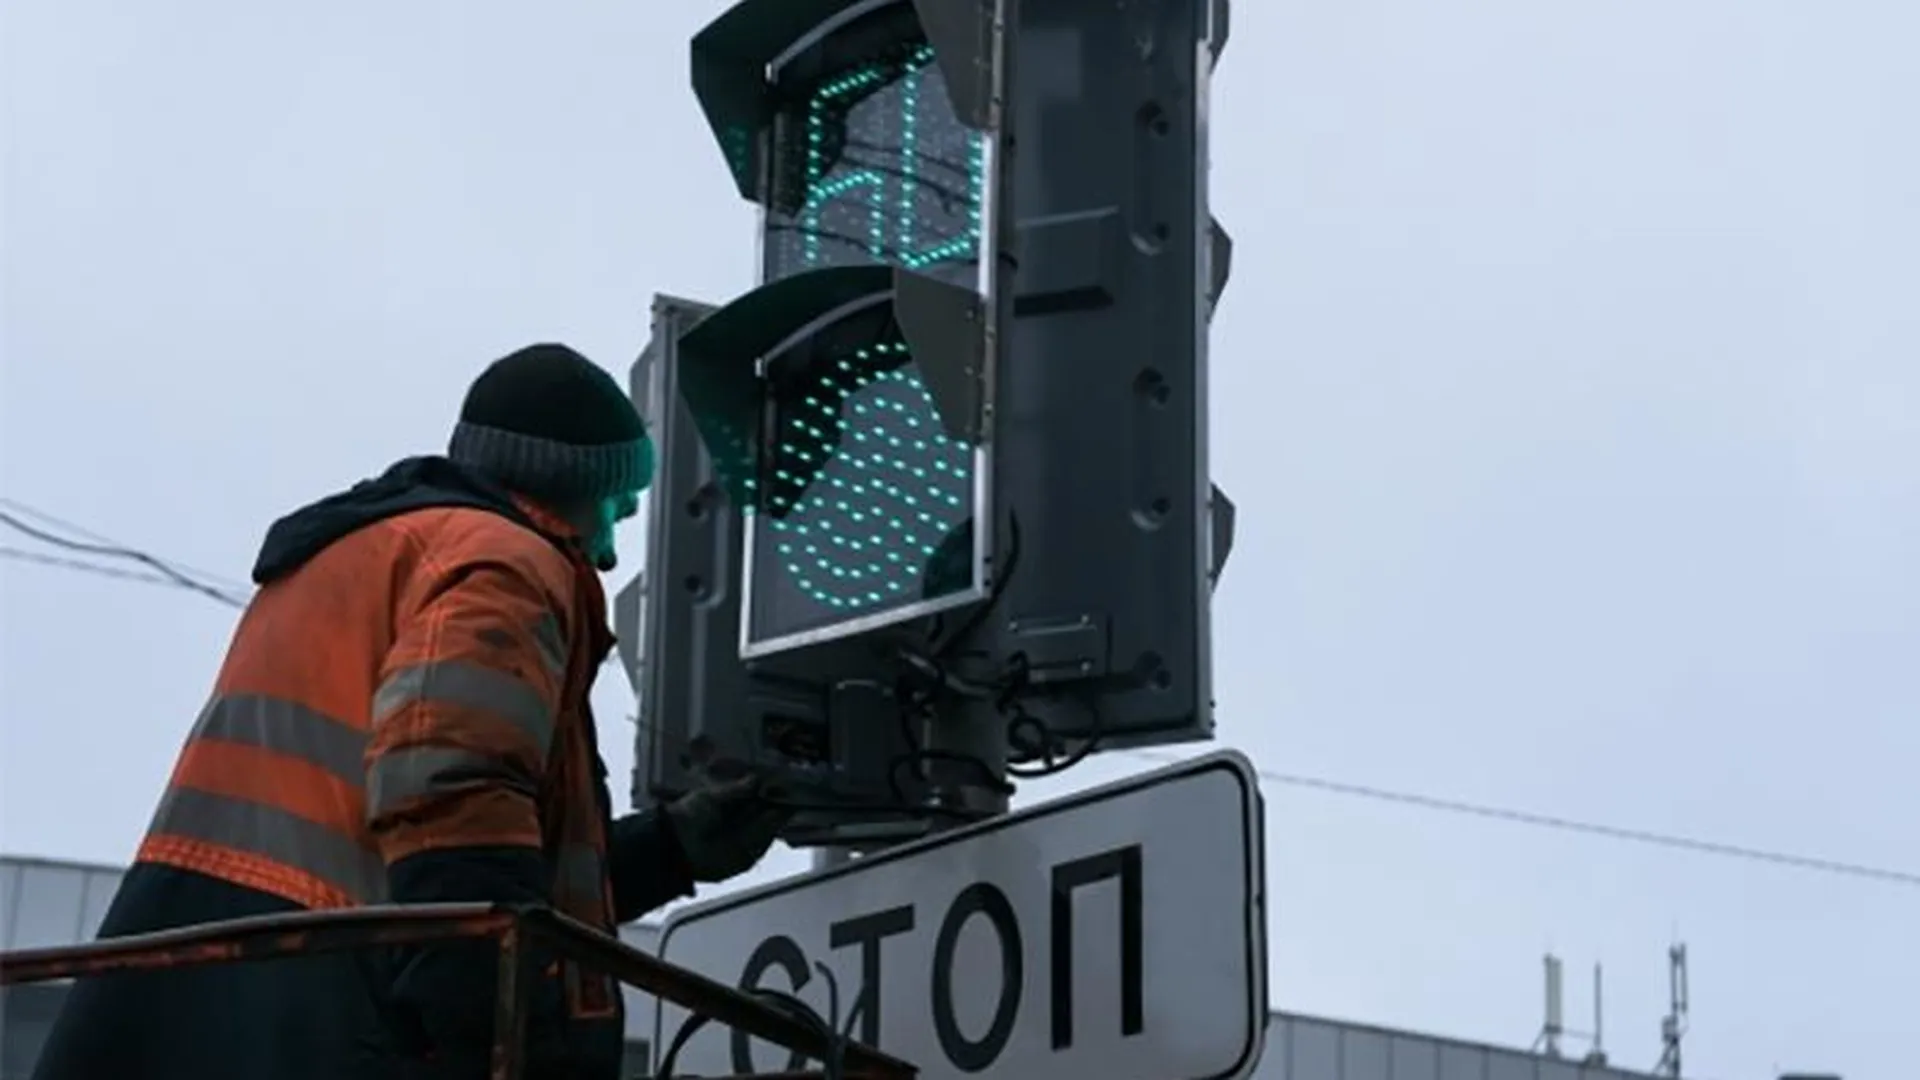 Катафоты, новые знаки, видеокамеры и освещение – как повышают безопасность дорог в Подмосковье 